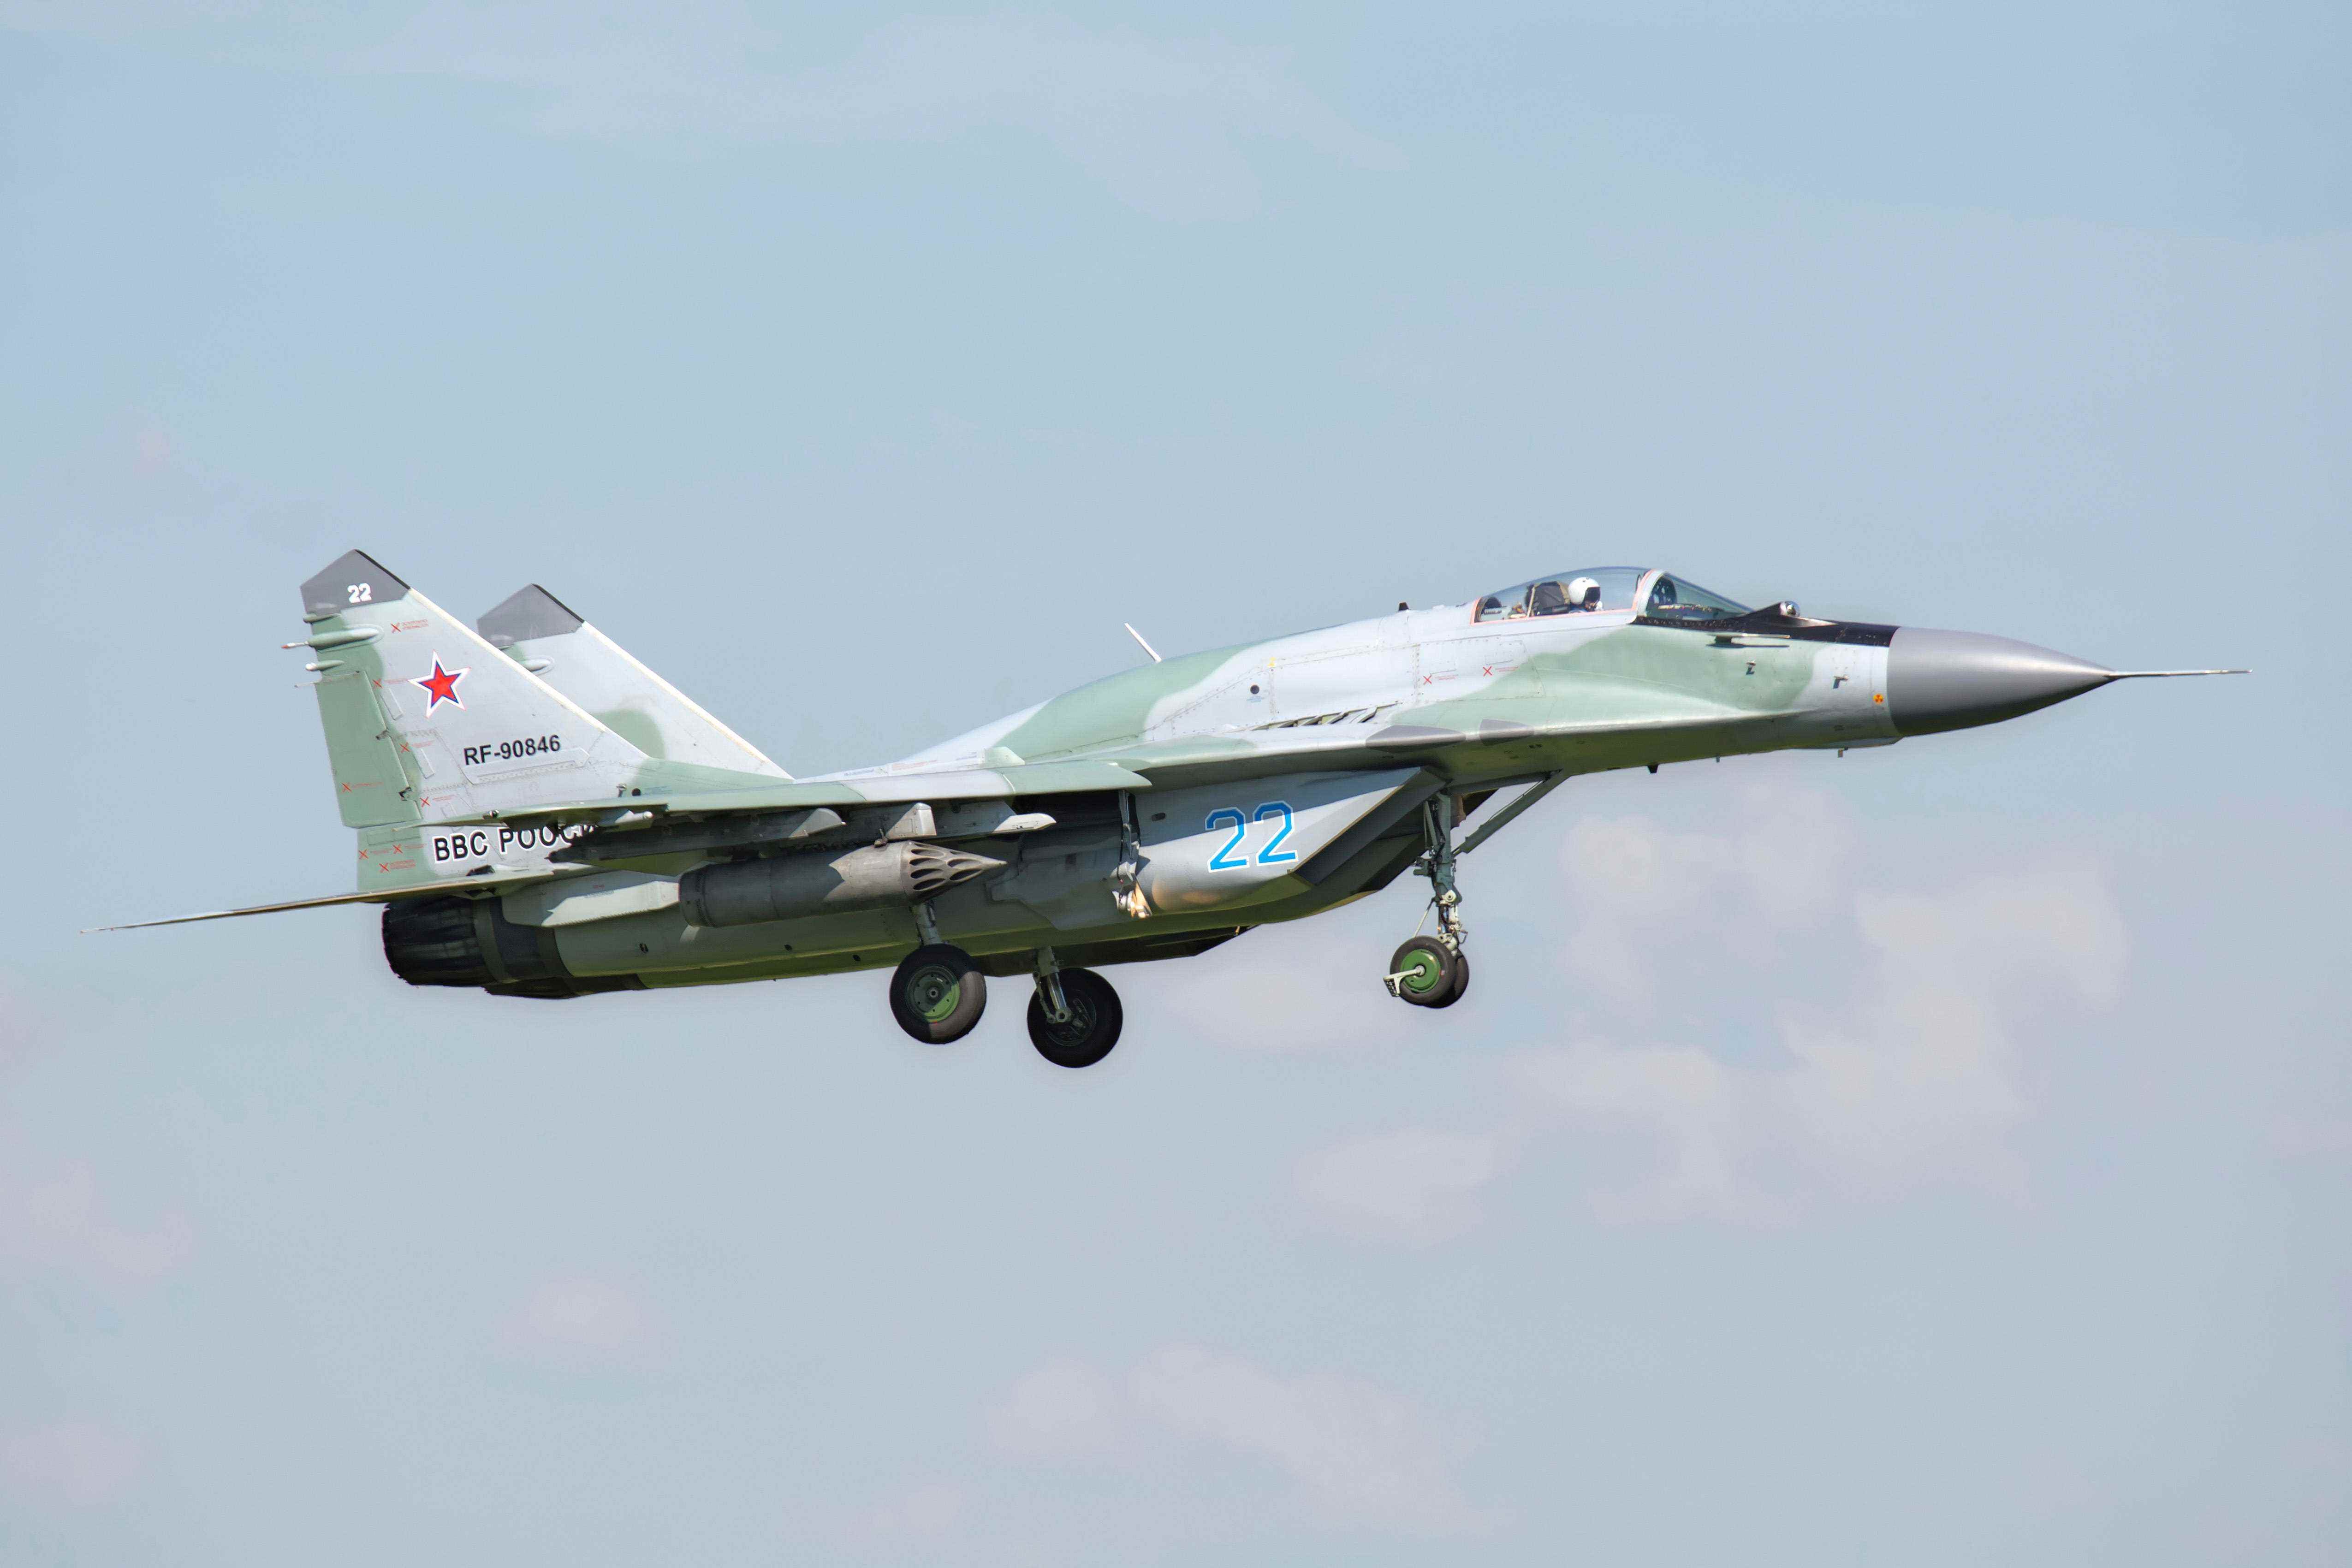 Russische Luftwaffe MiG-29SMT landet in Rjasan, Russland, nach einer Mission während der Übung Aviadarts 2016.